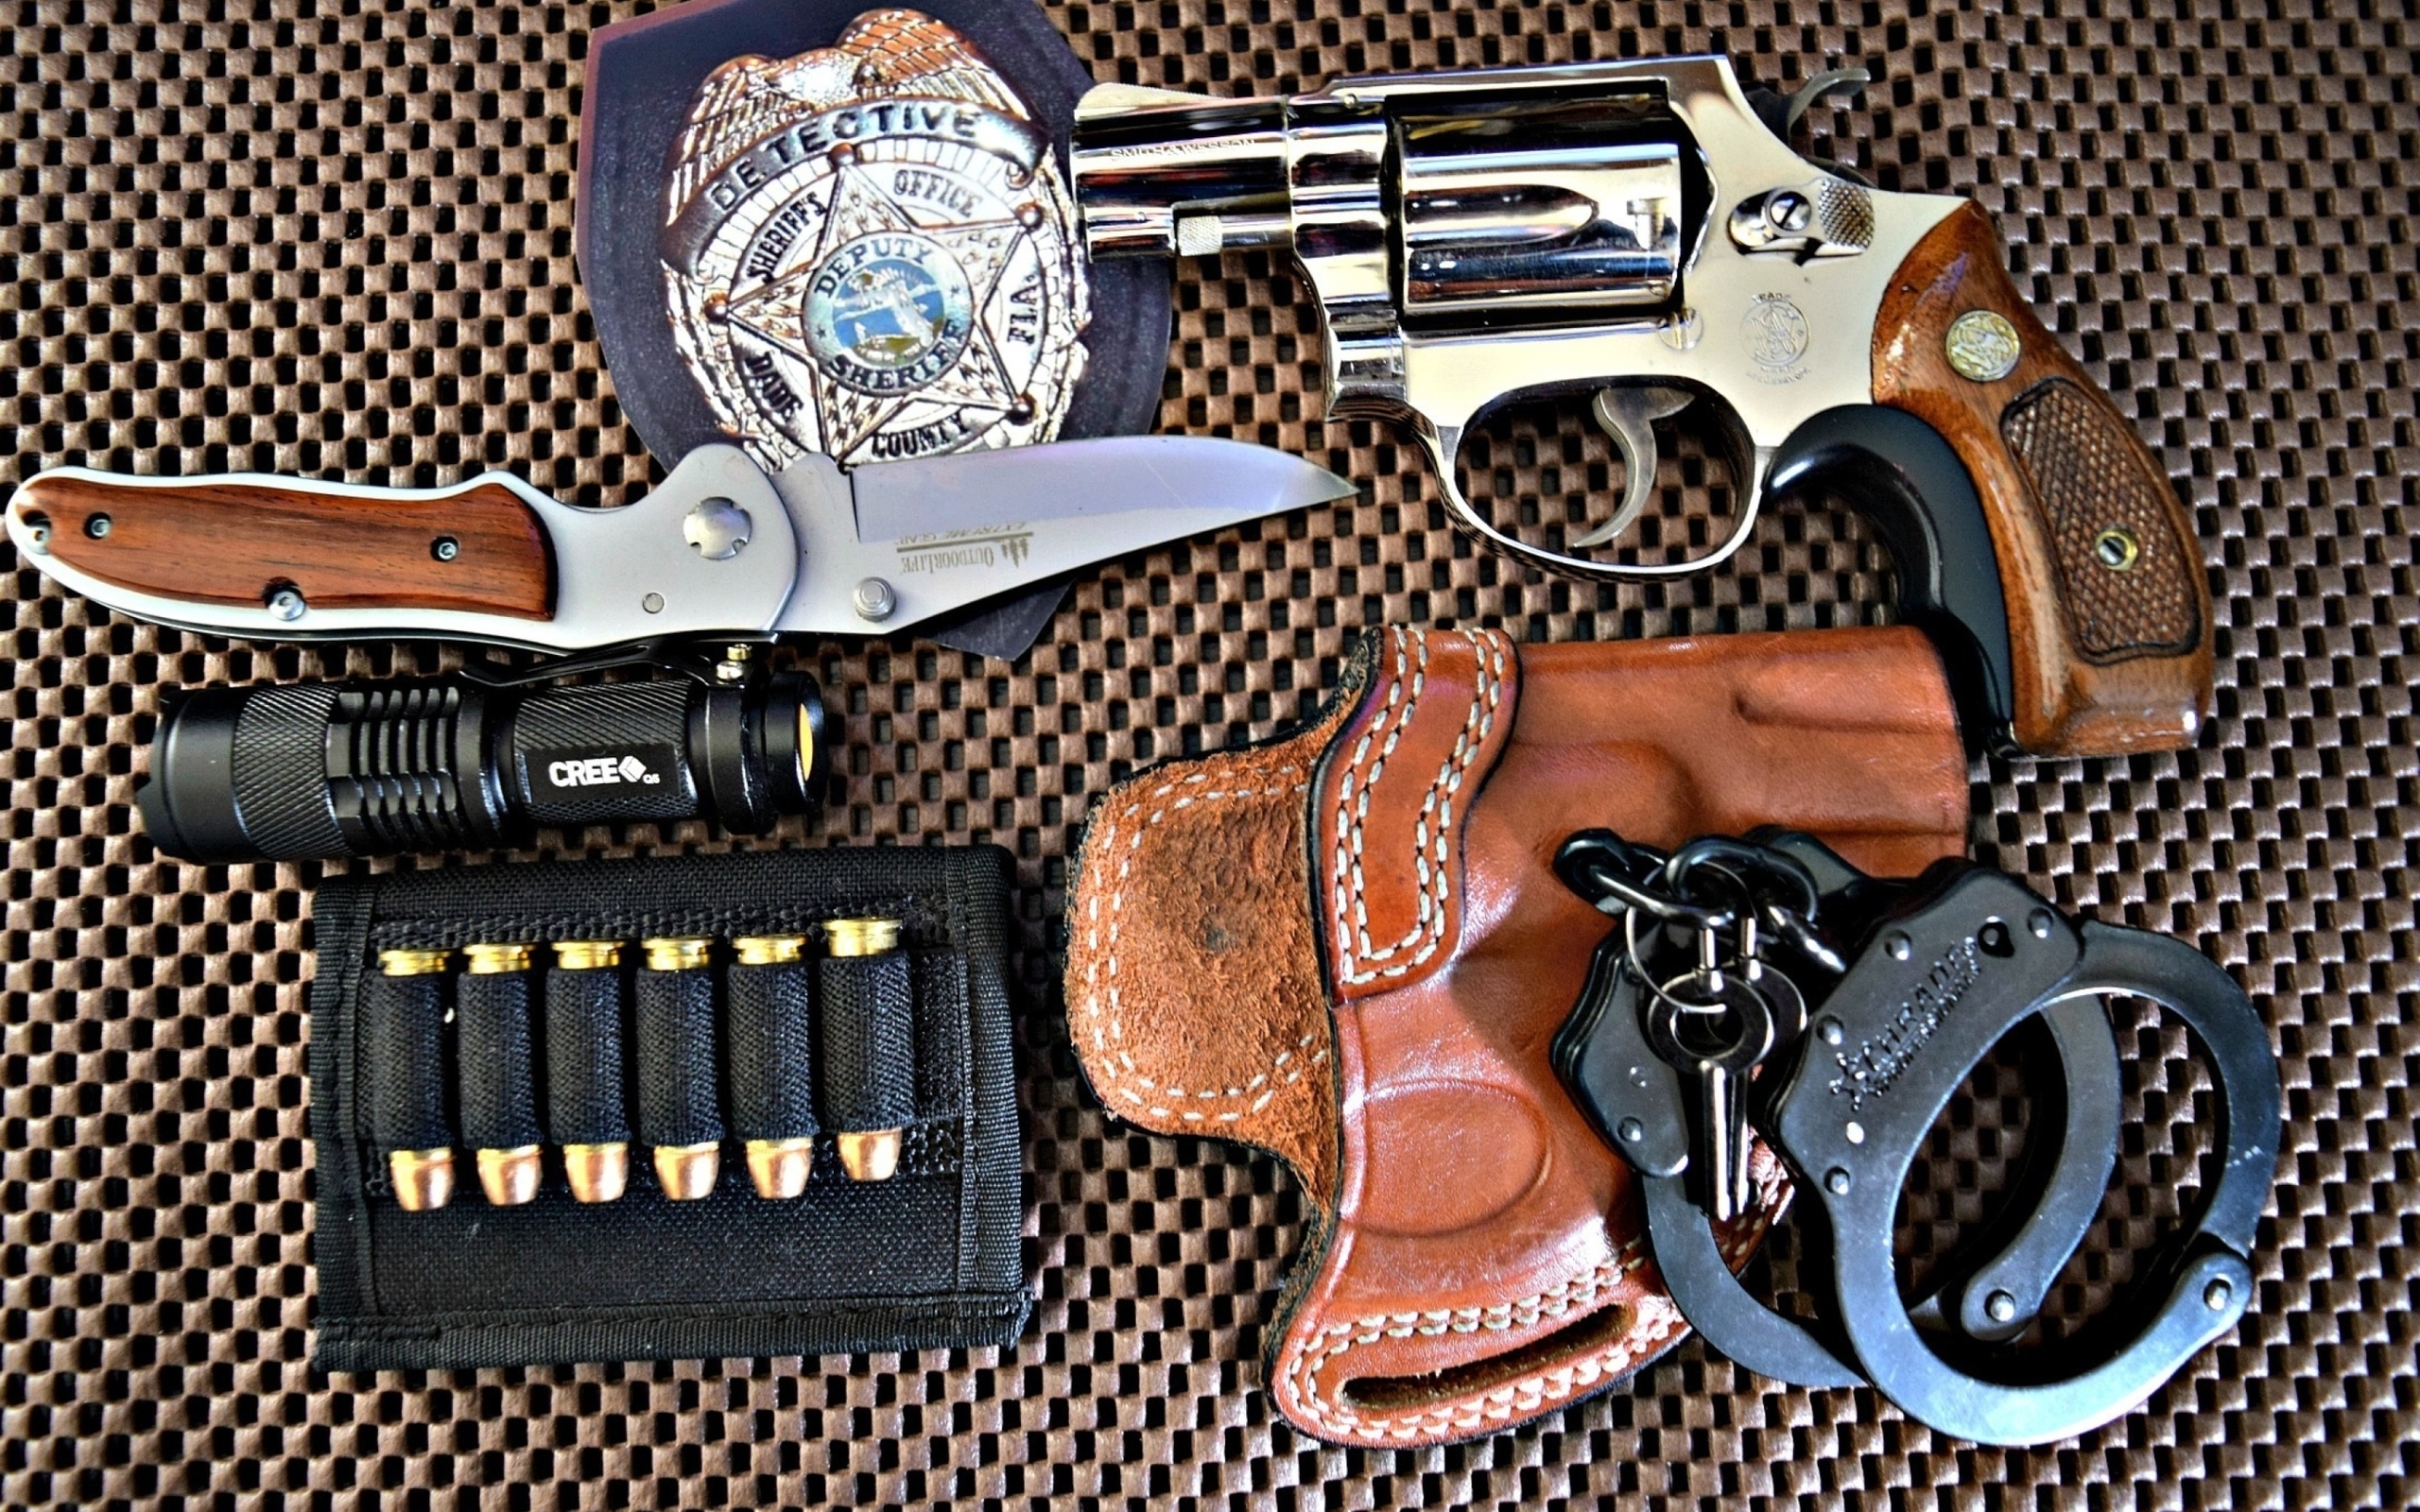 Image: Ammo, holster, flashlight, knife, badge, gun, clip, bullets, handcuffs, keys